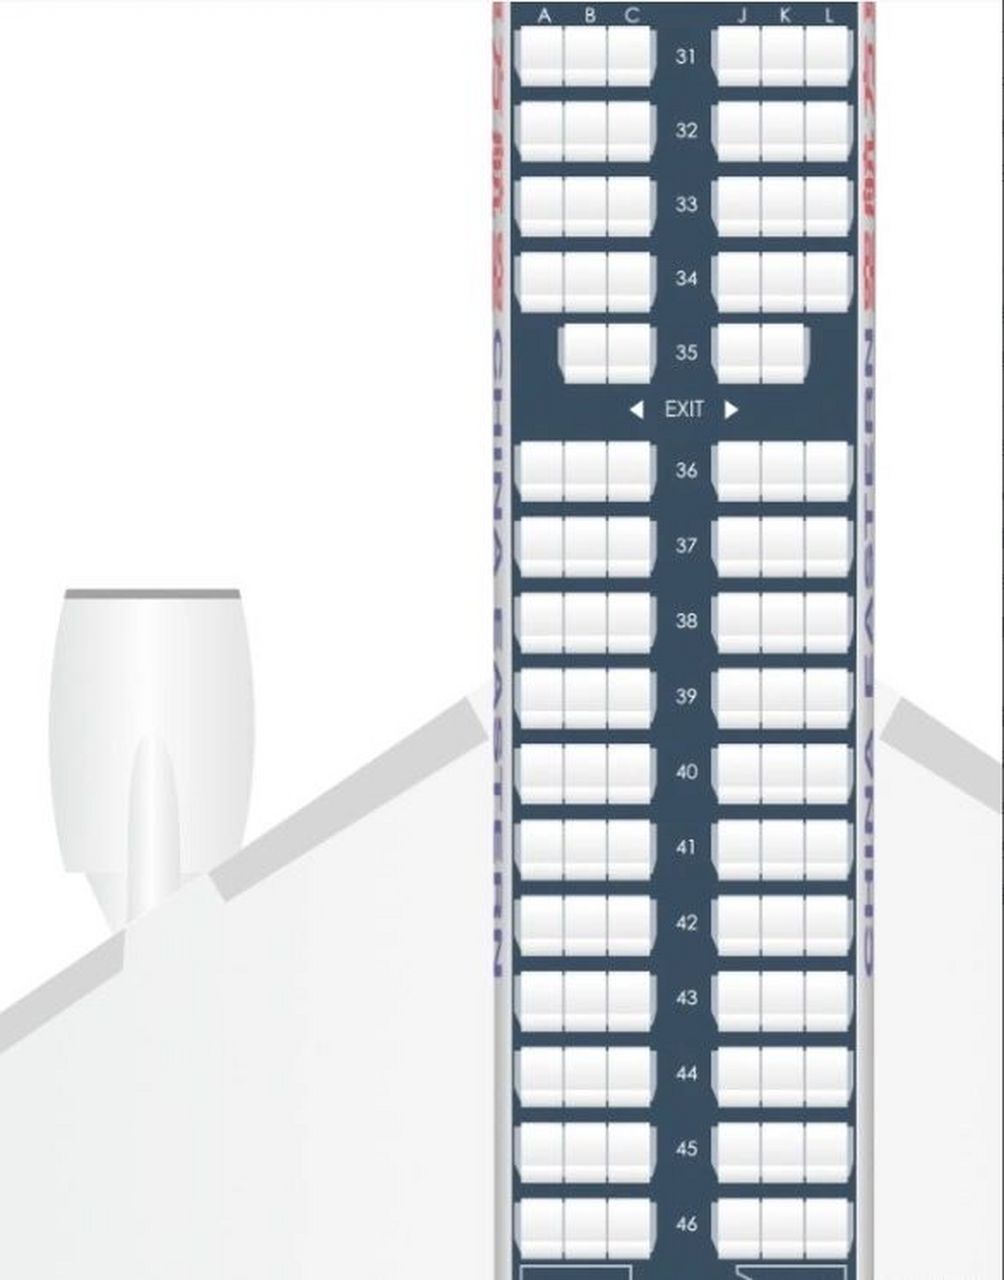 东方航空的座位分布图图片